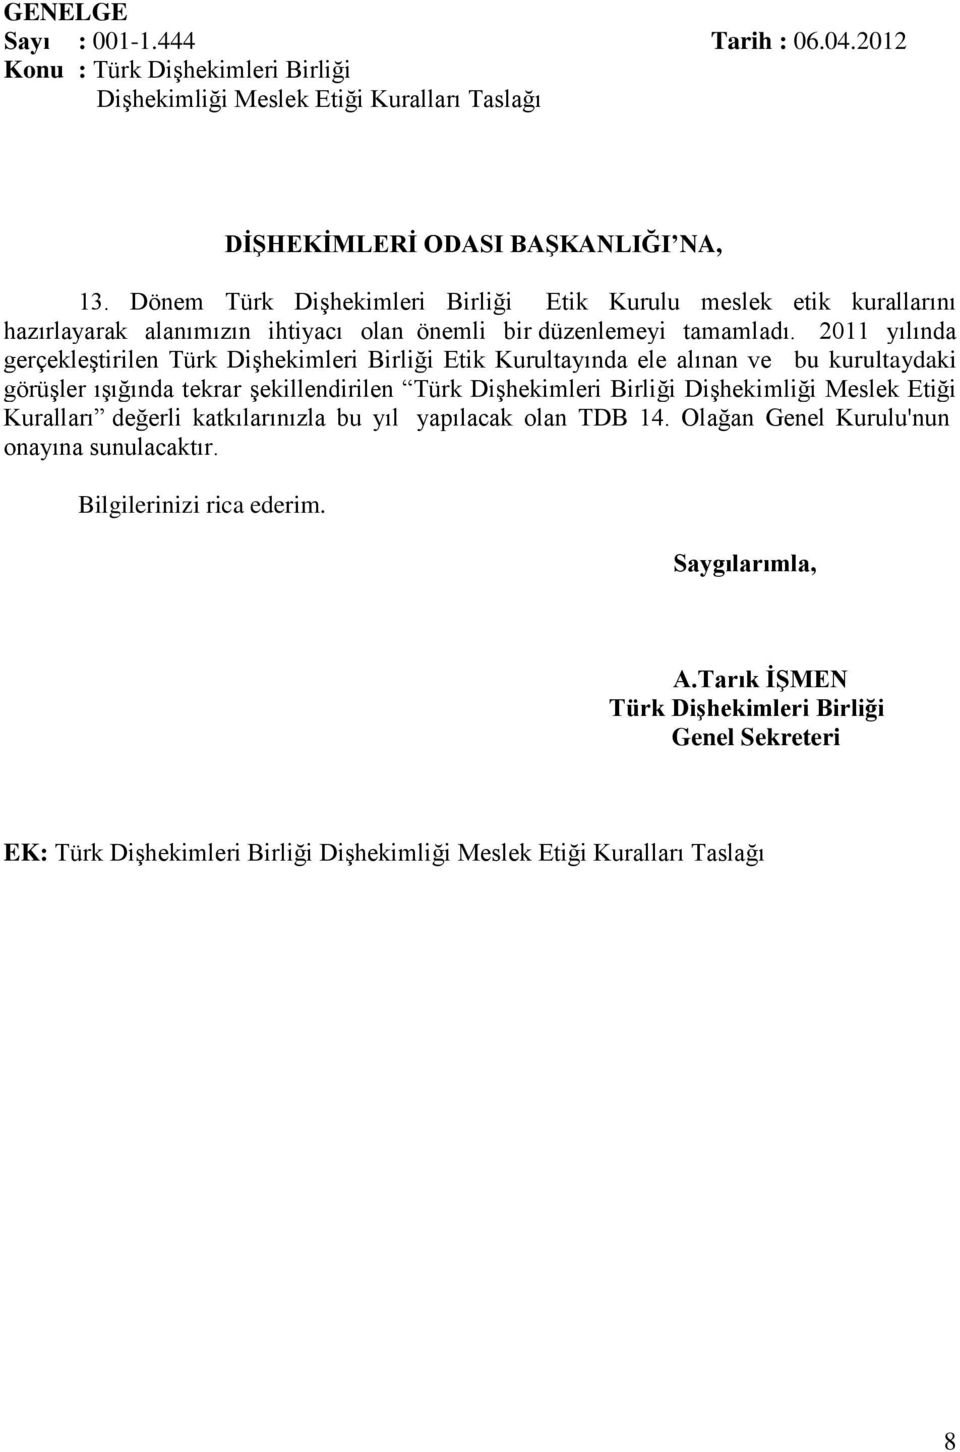 2011 yılında gerçekleştirilen Türk Dişhekimleri Birliği Etik Kurultayında ele alınan ve bu kurultaydaki görüşler ışığında tekrar şekillendirilen Türk Dişhekimleri Birliği Dişhekimliği Meslek